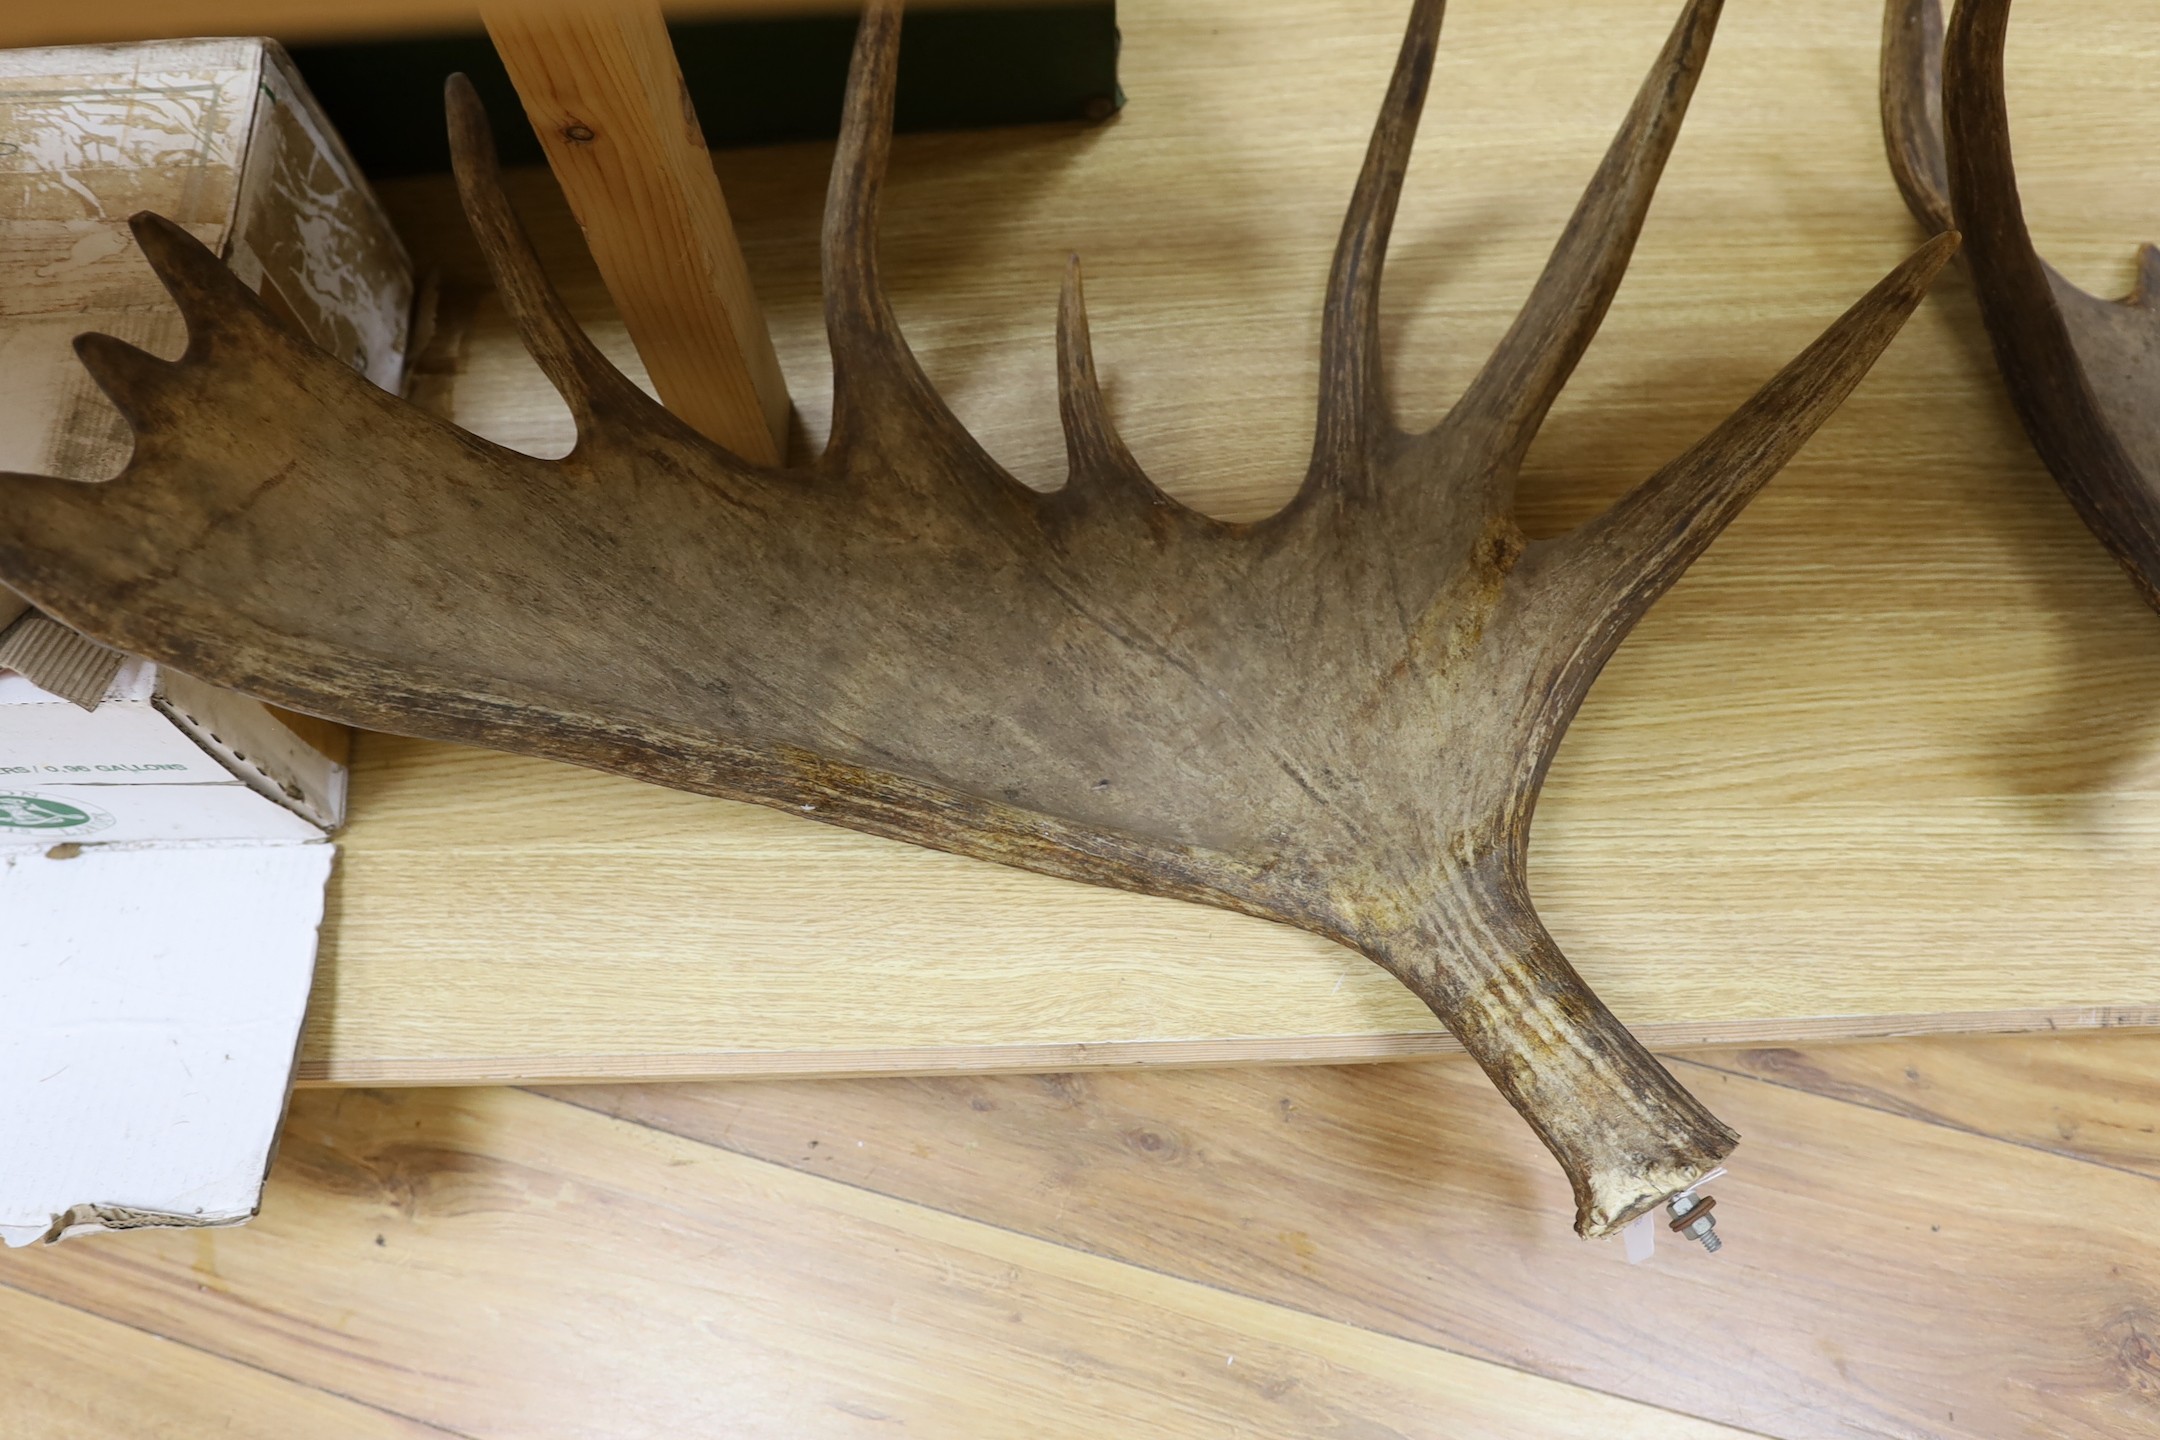 An unmounted pair of moose antlers